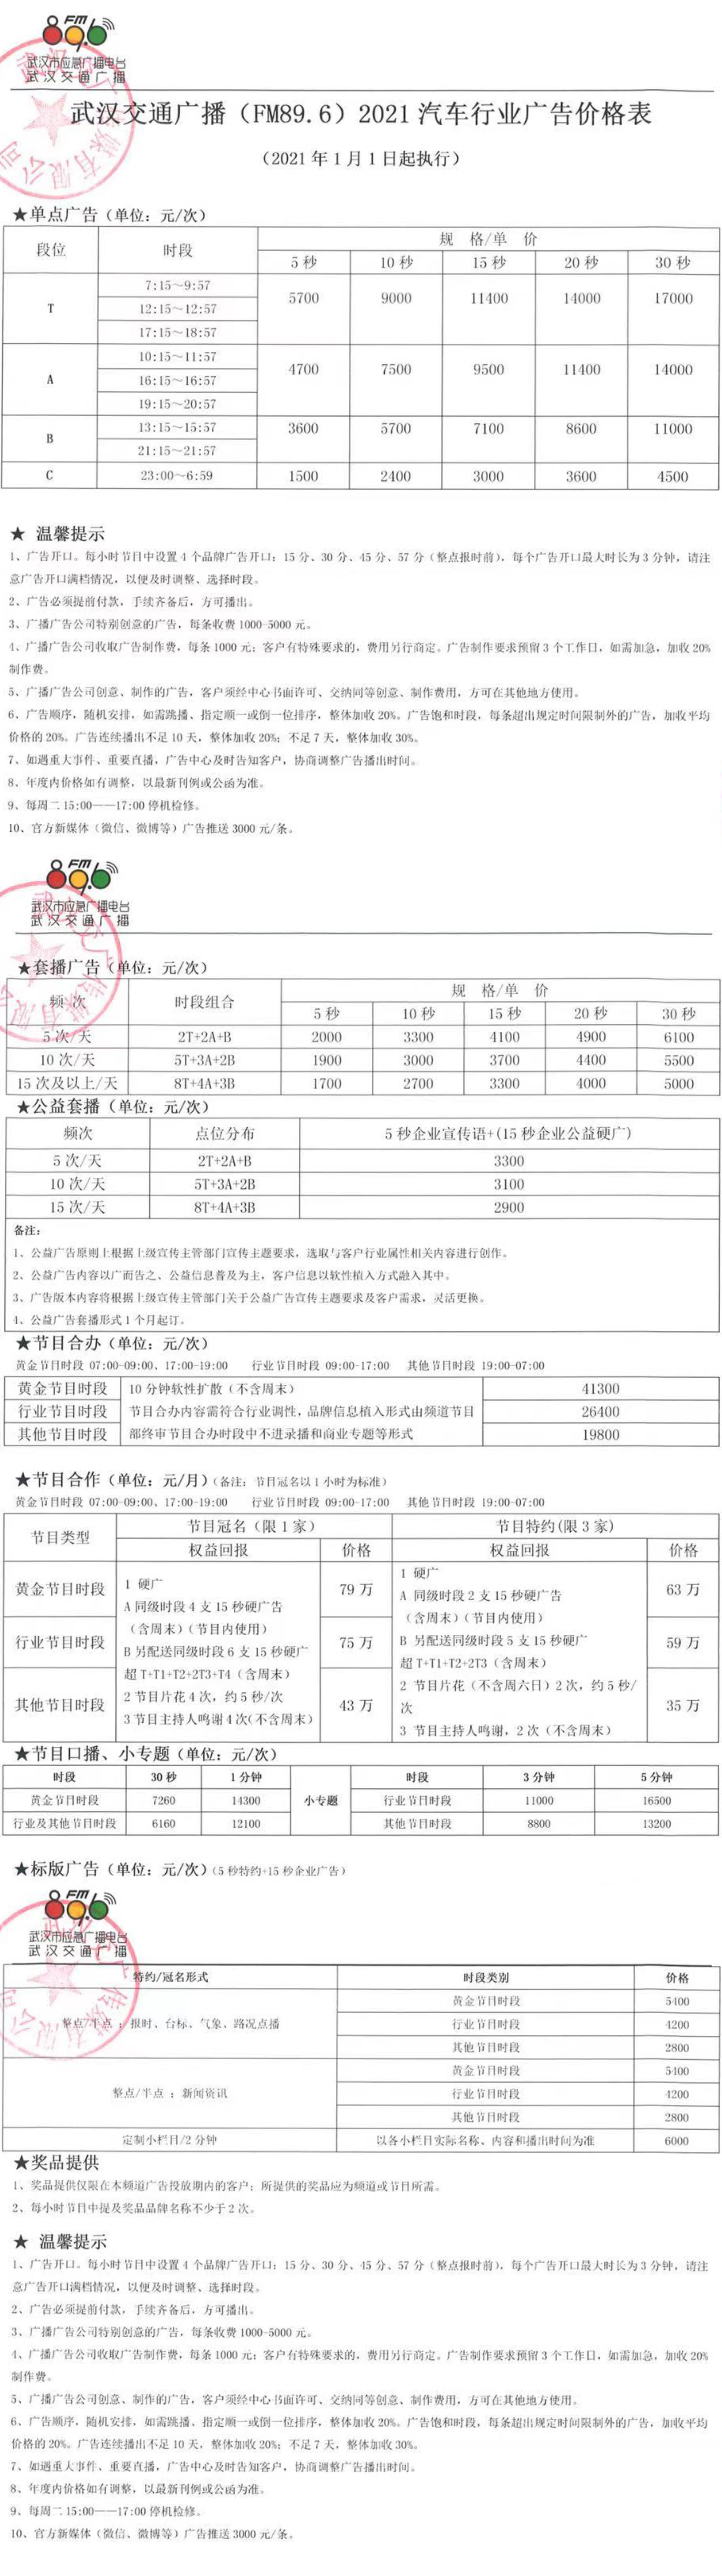 2021武汉人民广播电台交通广播 FM89.6、AM603广告报价表.jpg